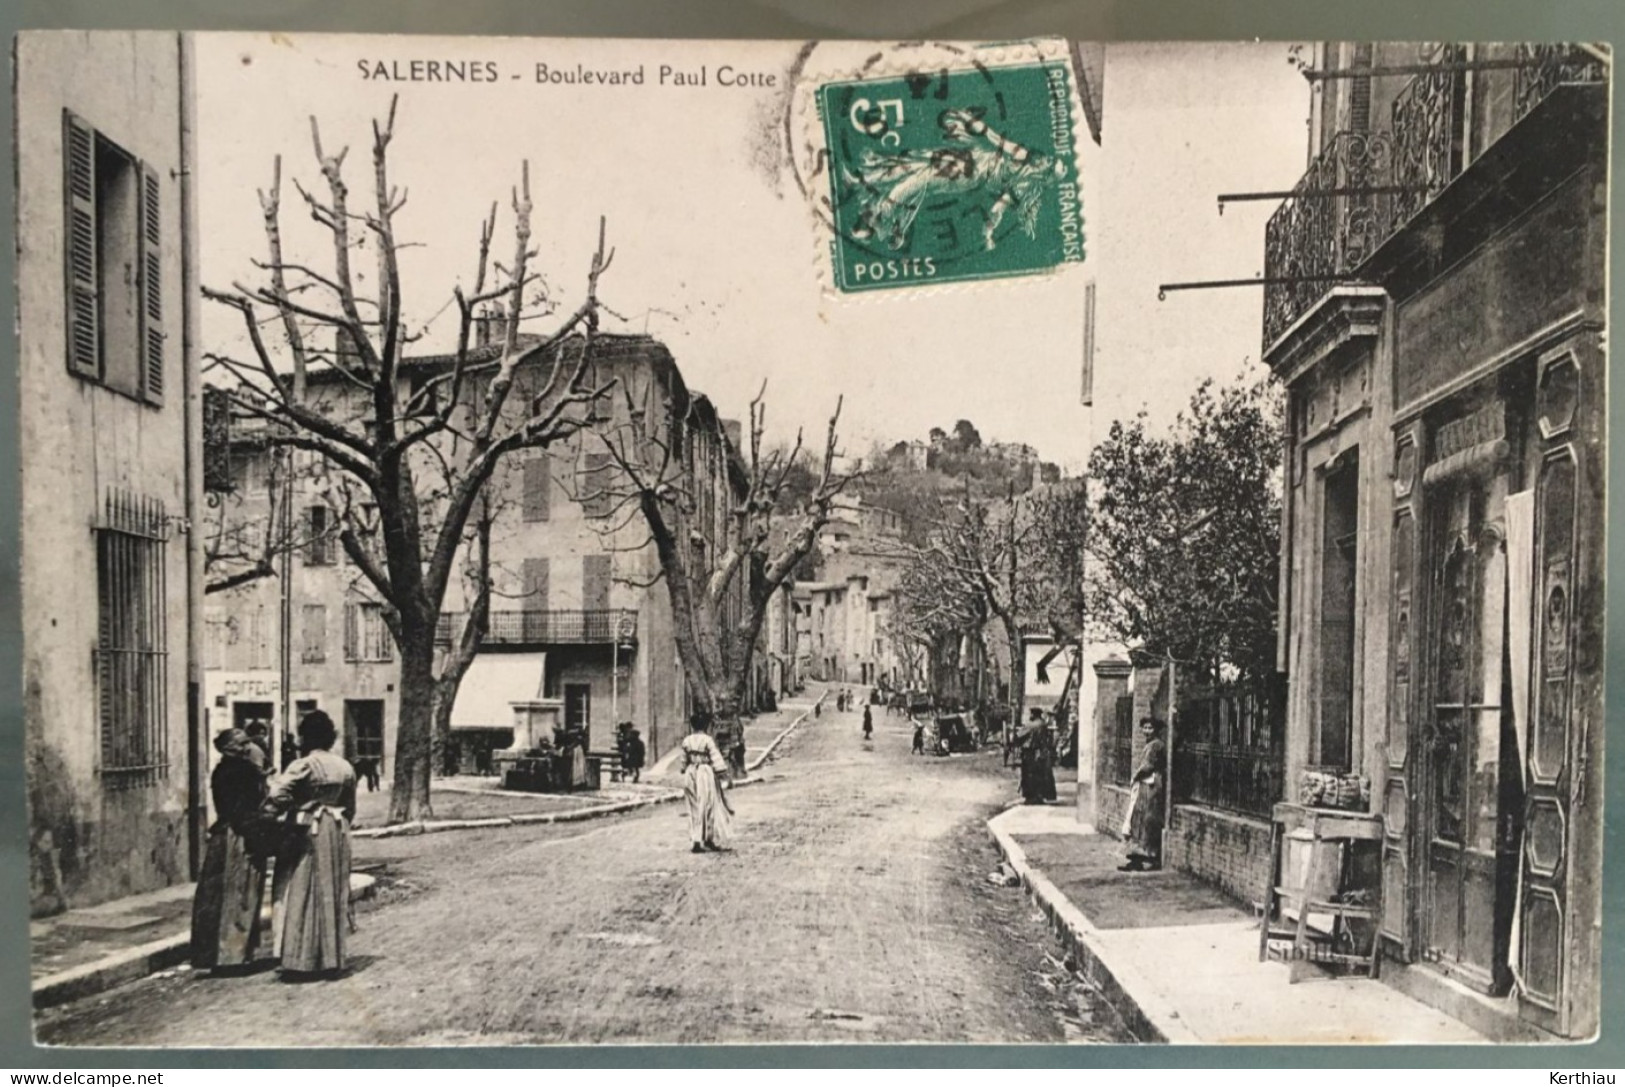 SALERNES - Boulevard Paul Cotte, ANIMEE. Circulée Années 1910. Cachet à Identifier: A.P.D. 48 - Salernes